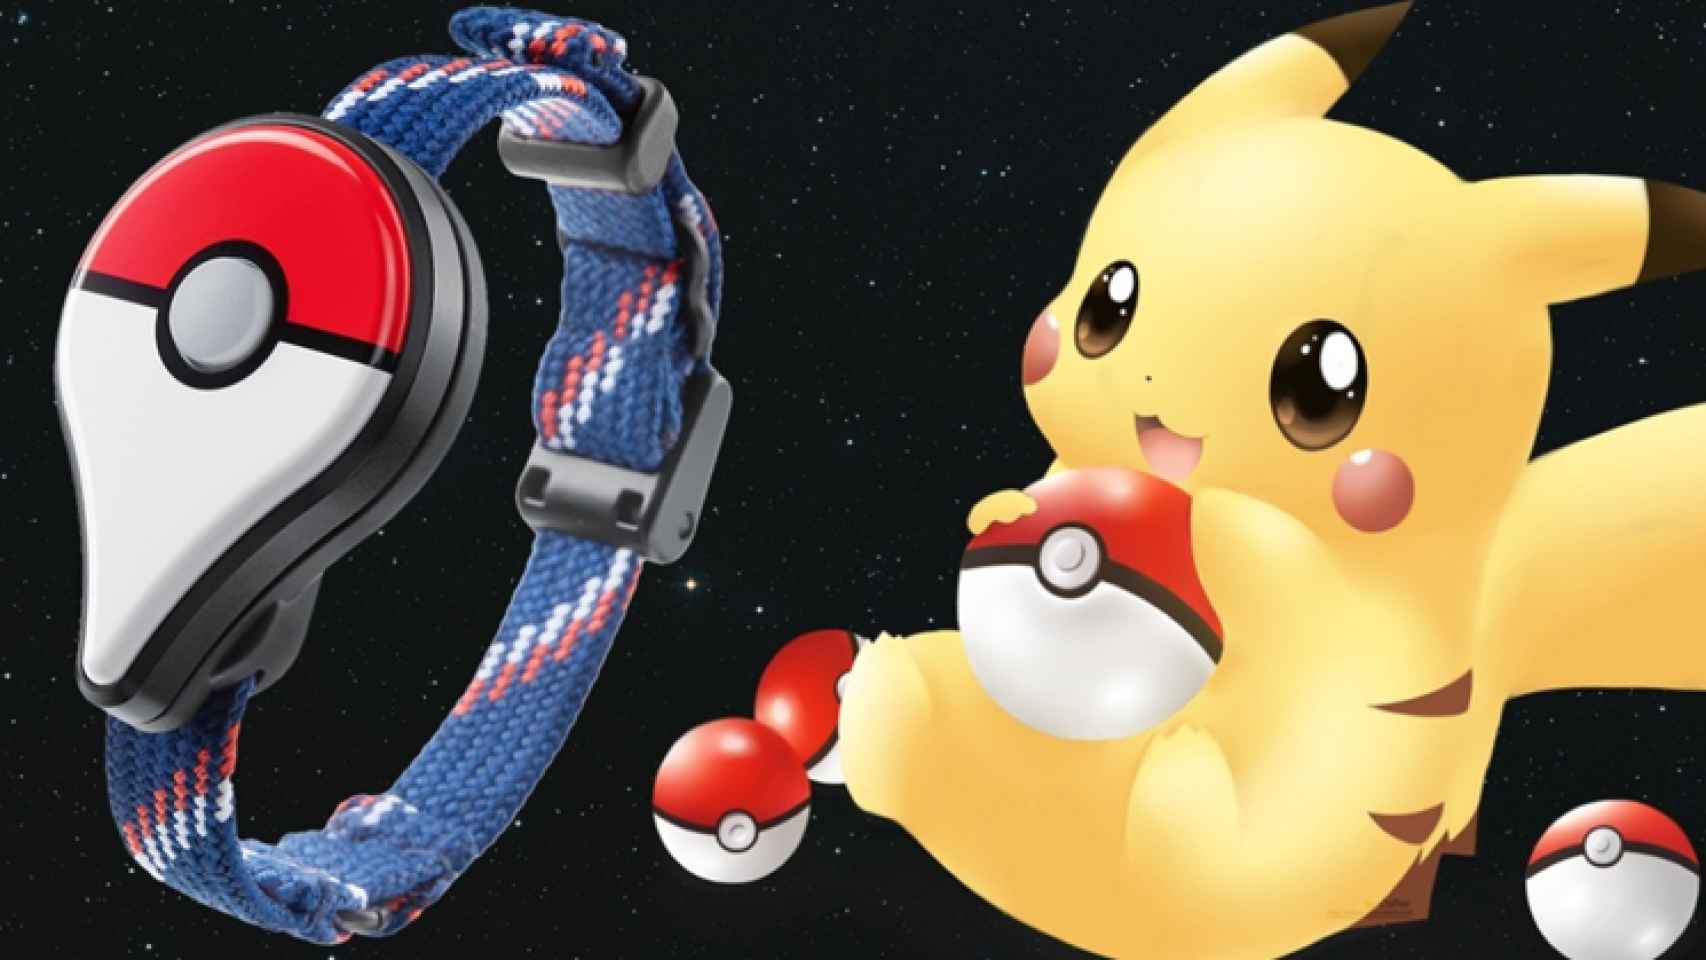 Pokémon Go Plus, ya disponible para reservar la pulsera oficial del juego de Pokémon